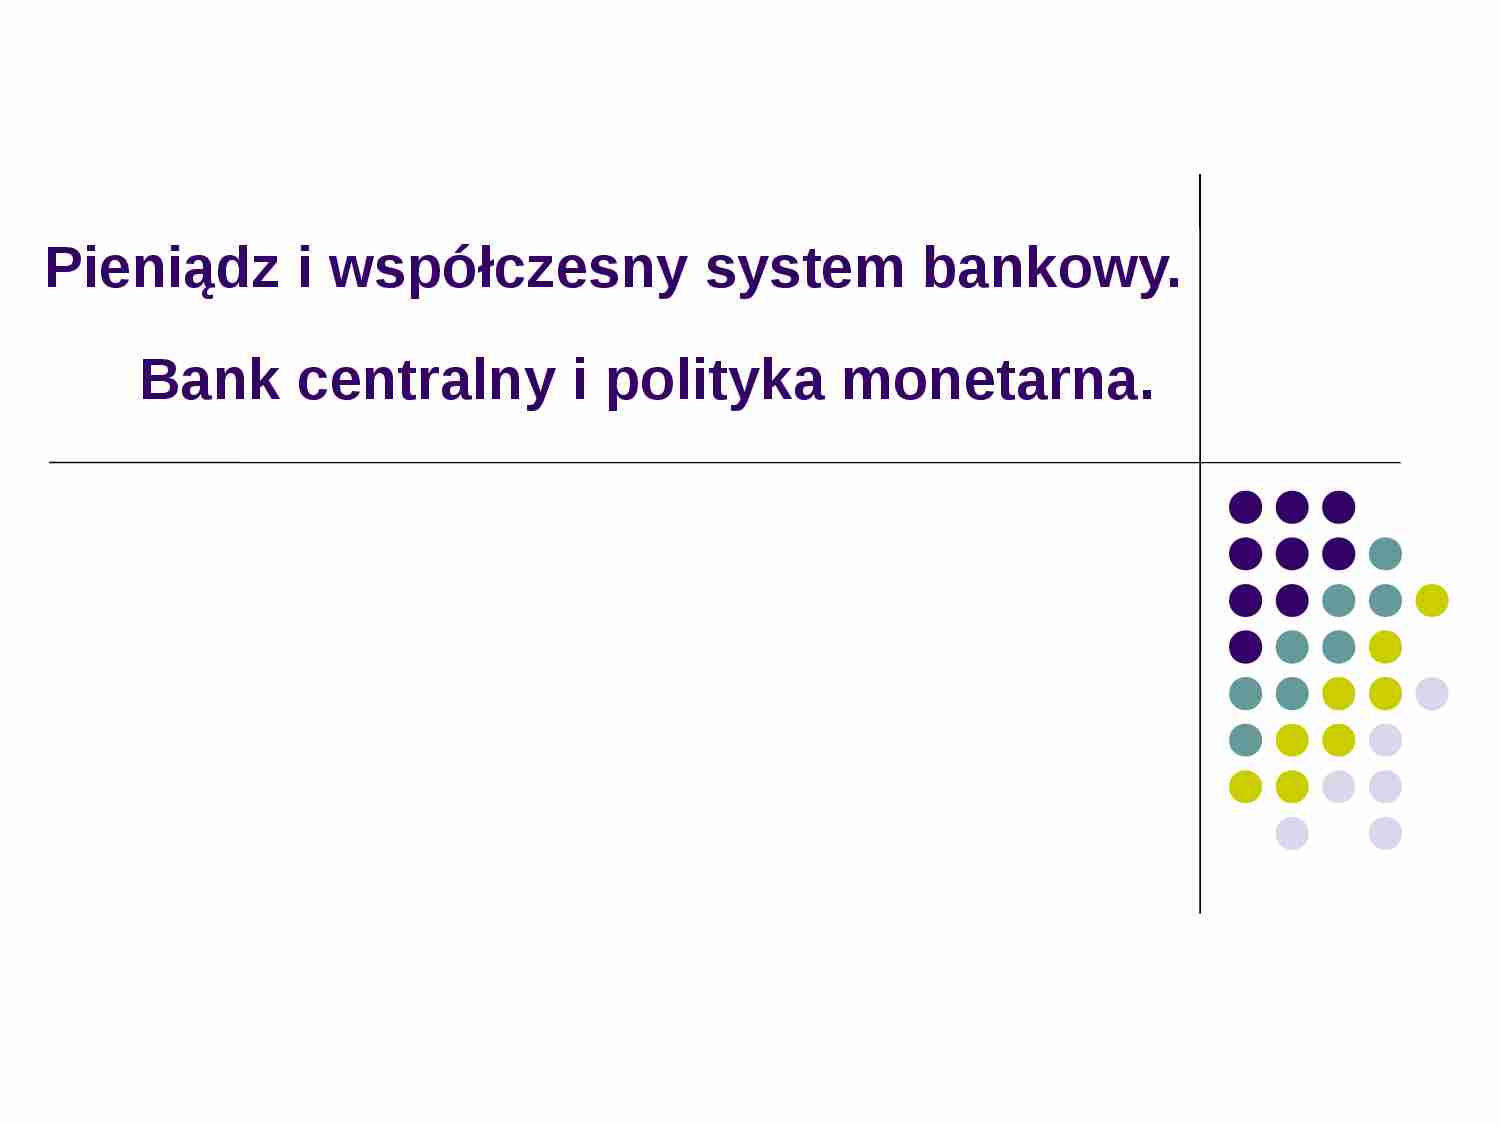 Pieniądz i współczesny system bankowy - prezentacja - strona 1